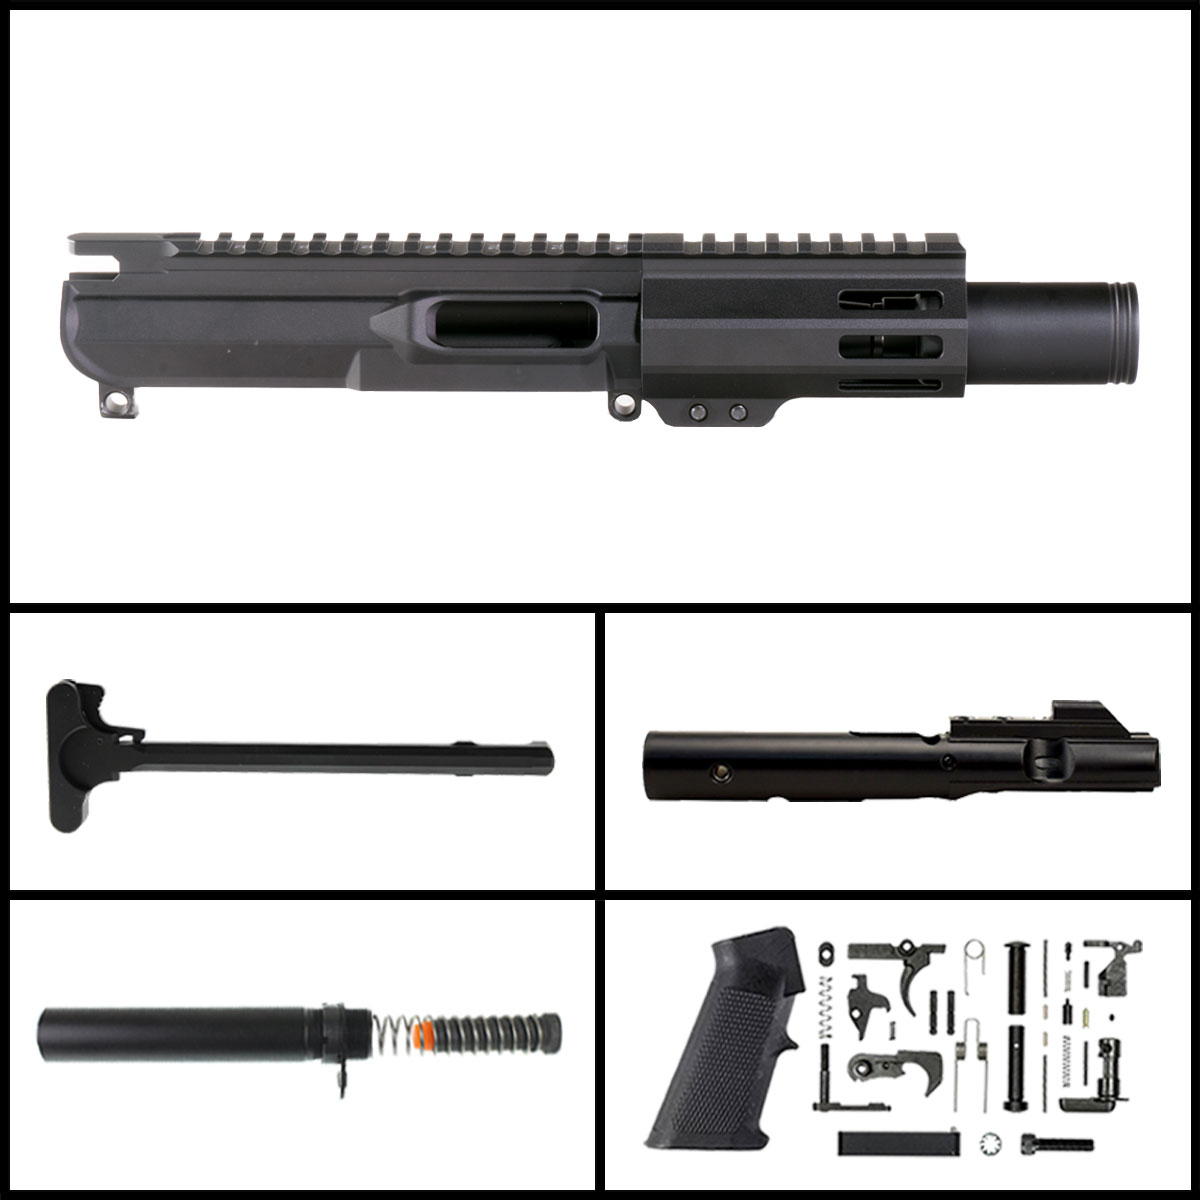 DTT 'Somber Glow' 4-inch AR-15 9mm Nitride Pistol Full Build Kit